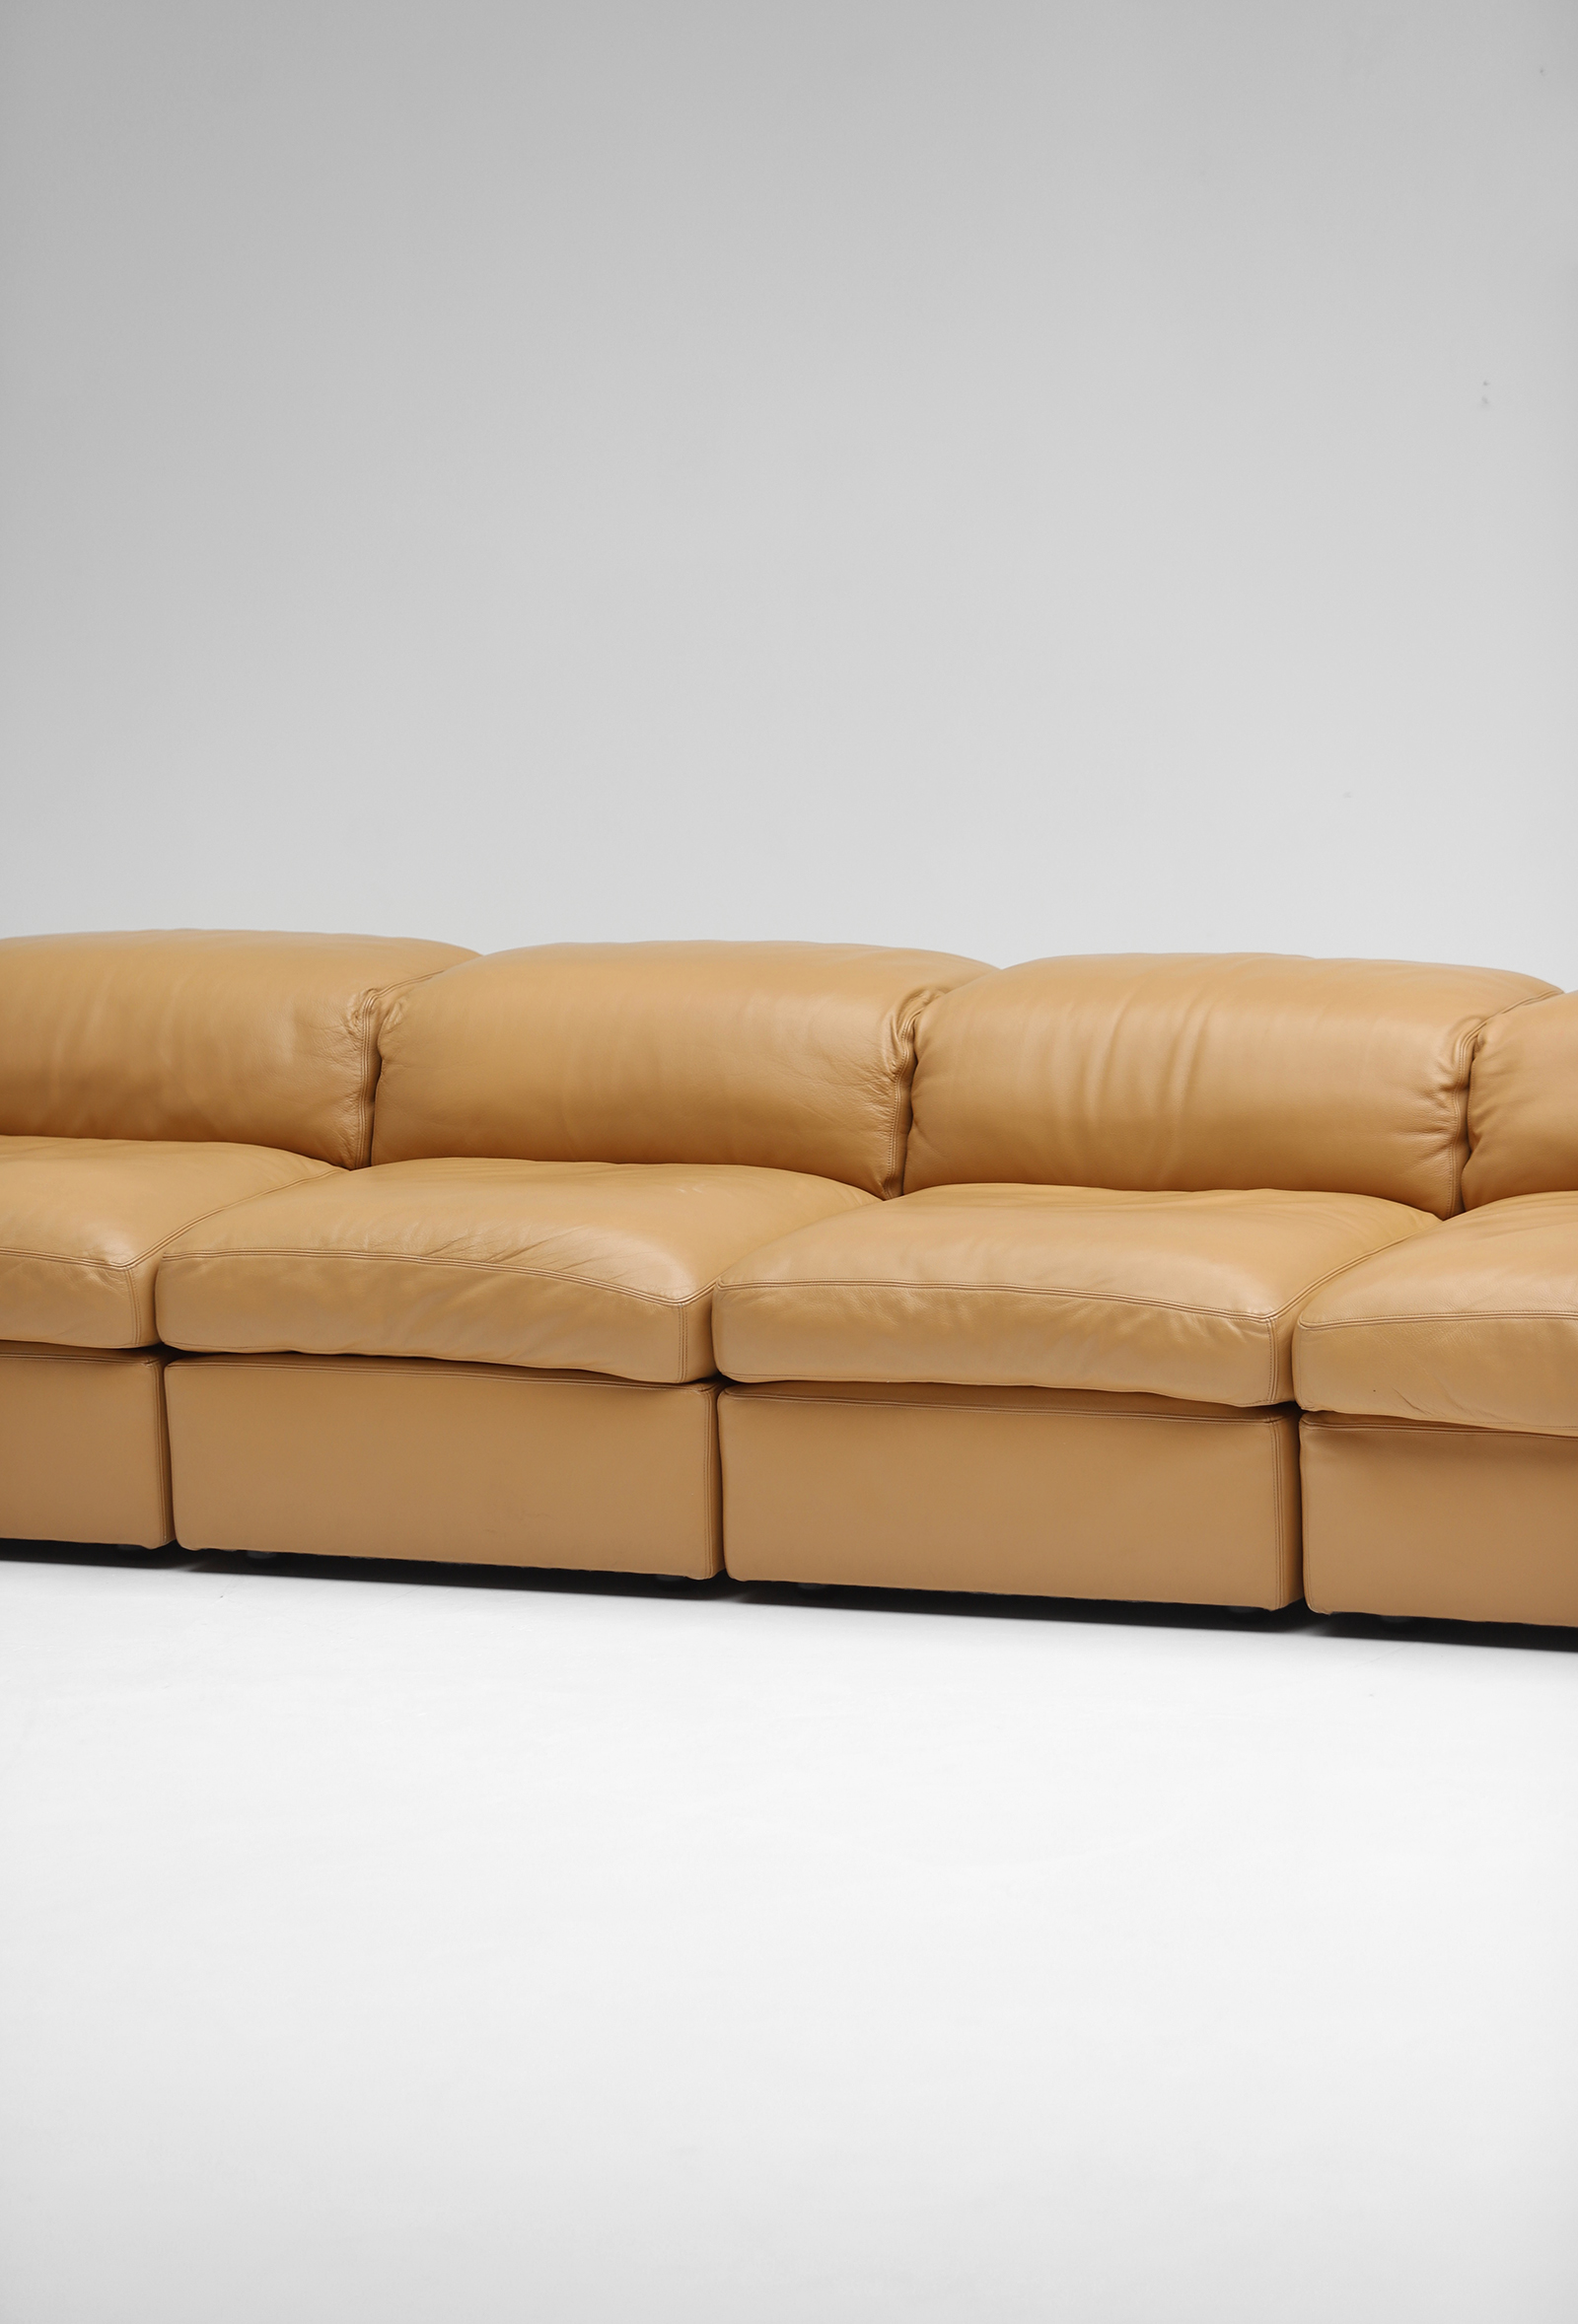 Durlet model 'Jeep' modular sofa setimage 3